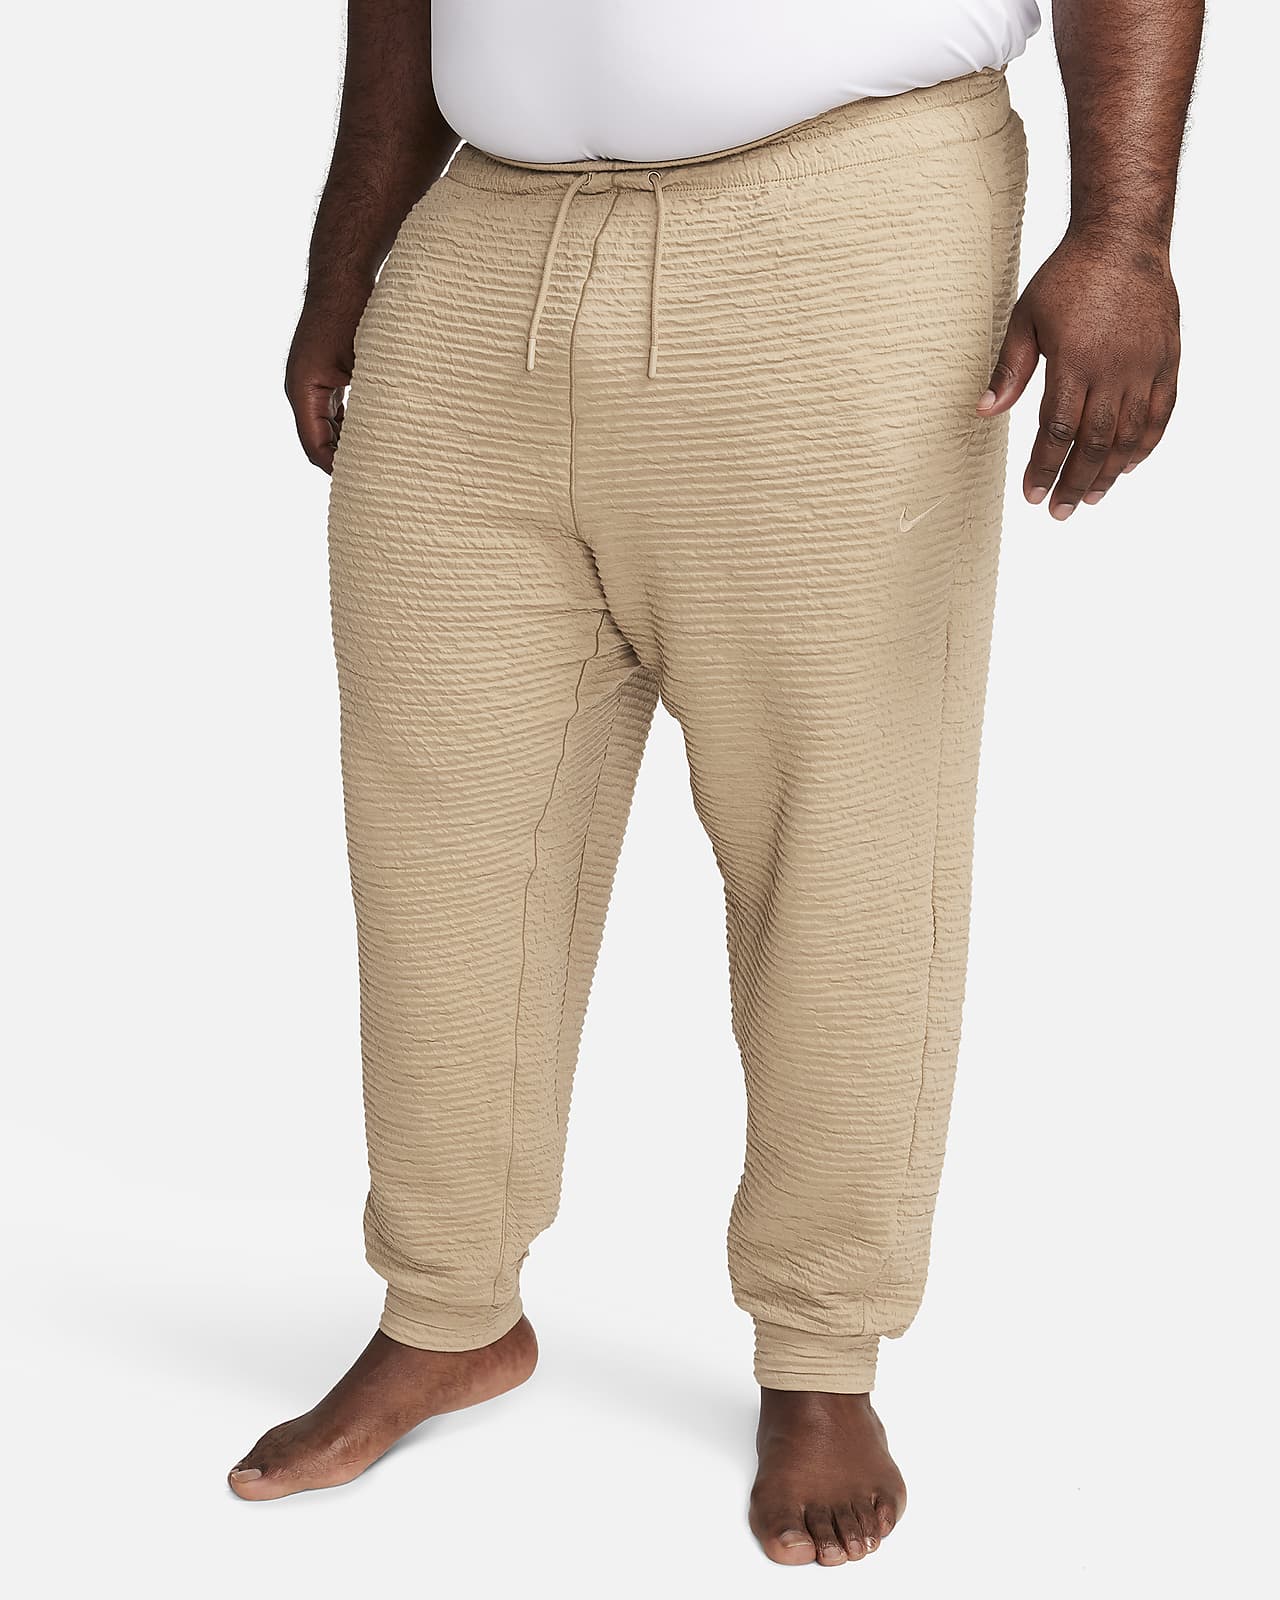 Nike Yoga Men's Dri-FIT Pants